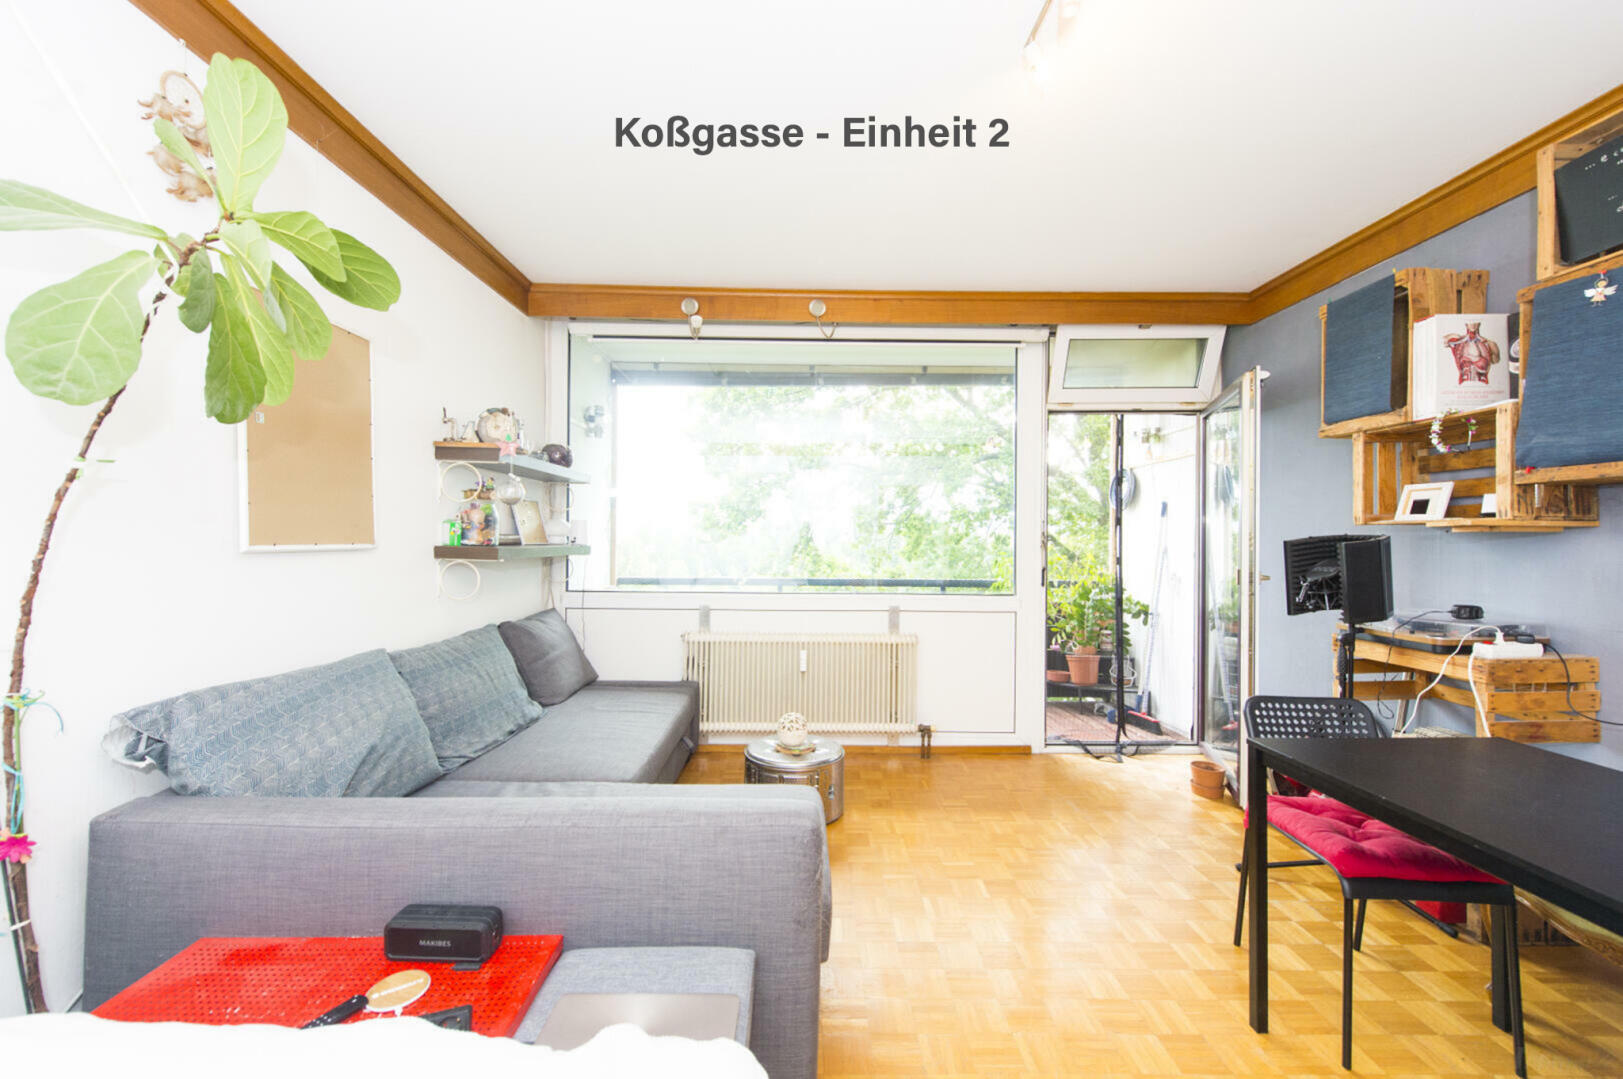 Wohnung zu kaufen: Koßgasse, 8010 Graz - Koßgasse - Einheit 2